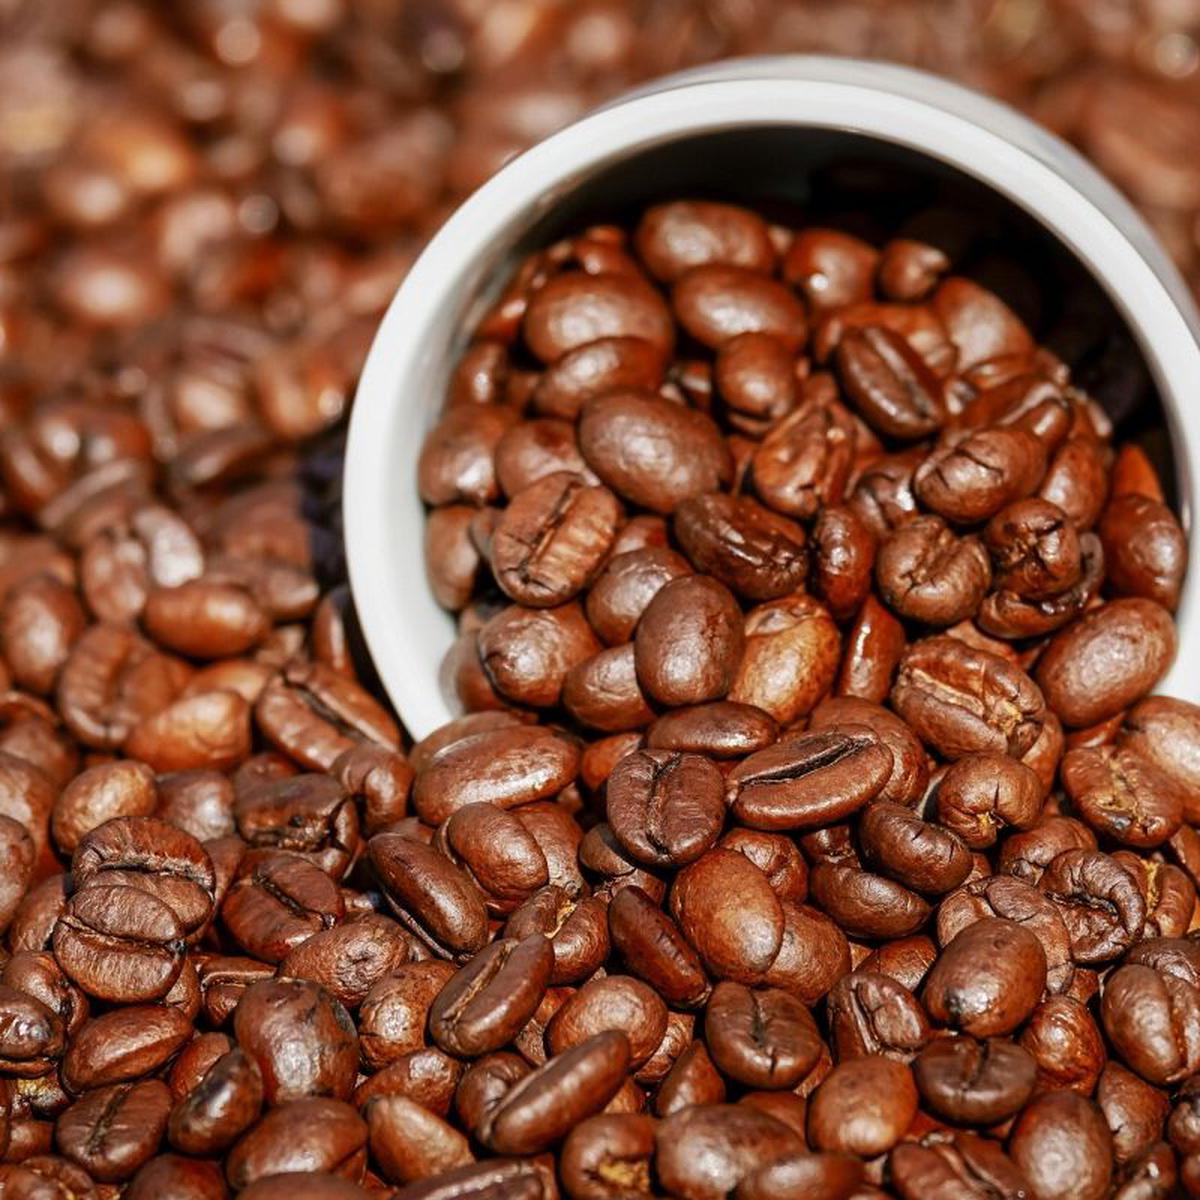 El café molido debe conservarse en la nevera?